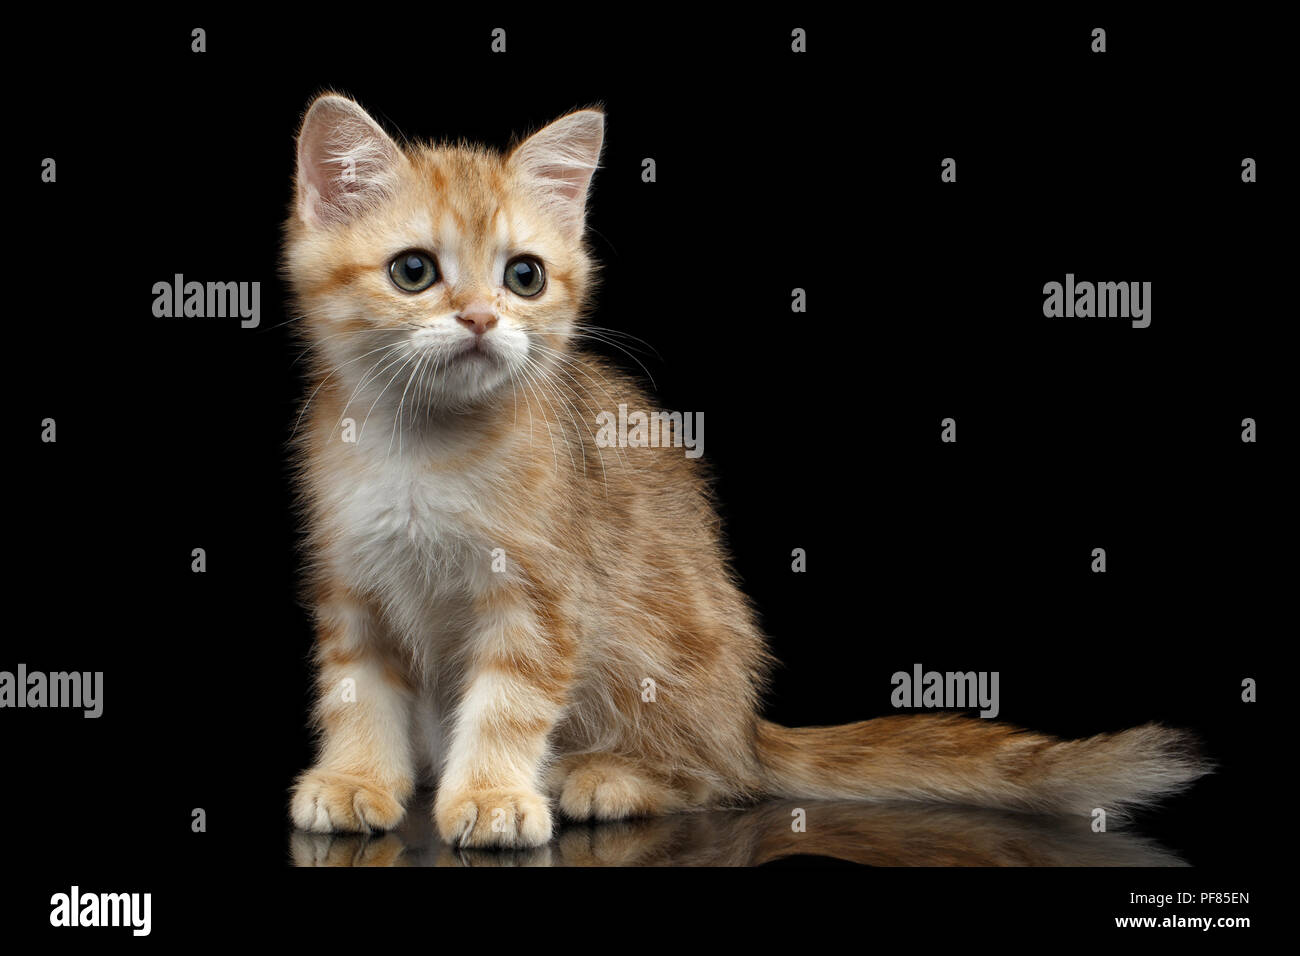 Carino razza britannica Kitty oro Chinchilla colore con tabby, seduto isolato su sfondo nero con la riflessione, vista frontale Foto Stock